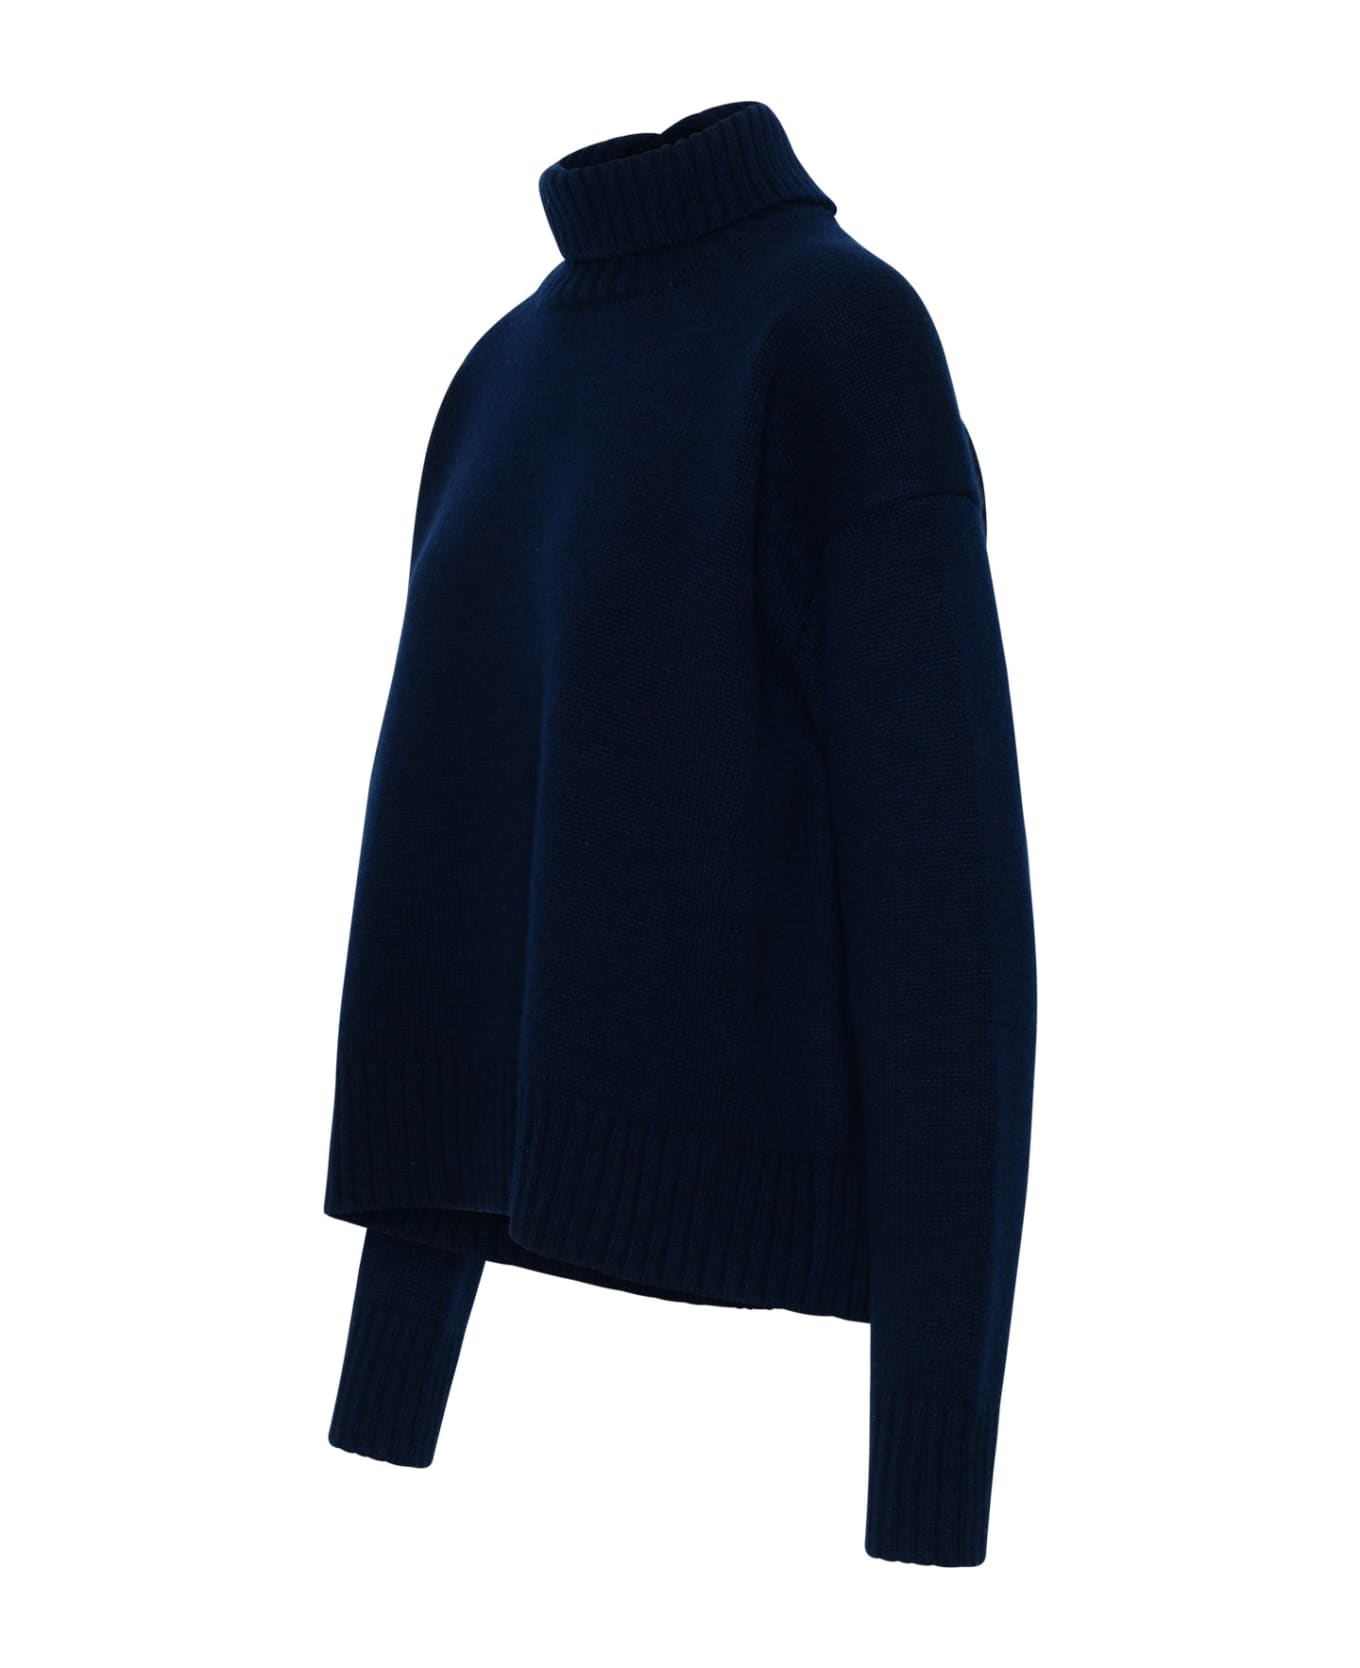 Jil Sander Sweater In Navy Cashmere Blend - Blue ニットウェア